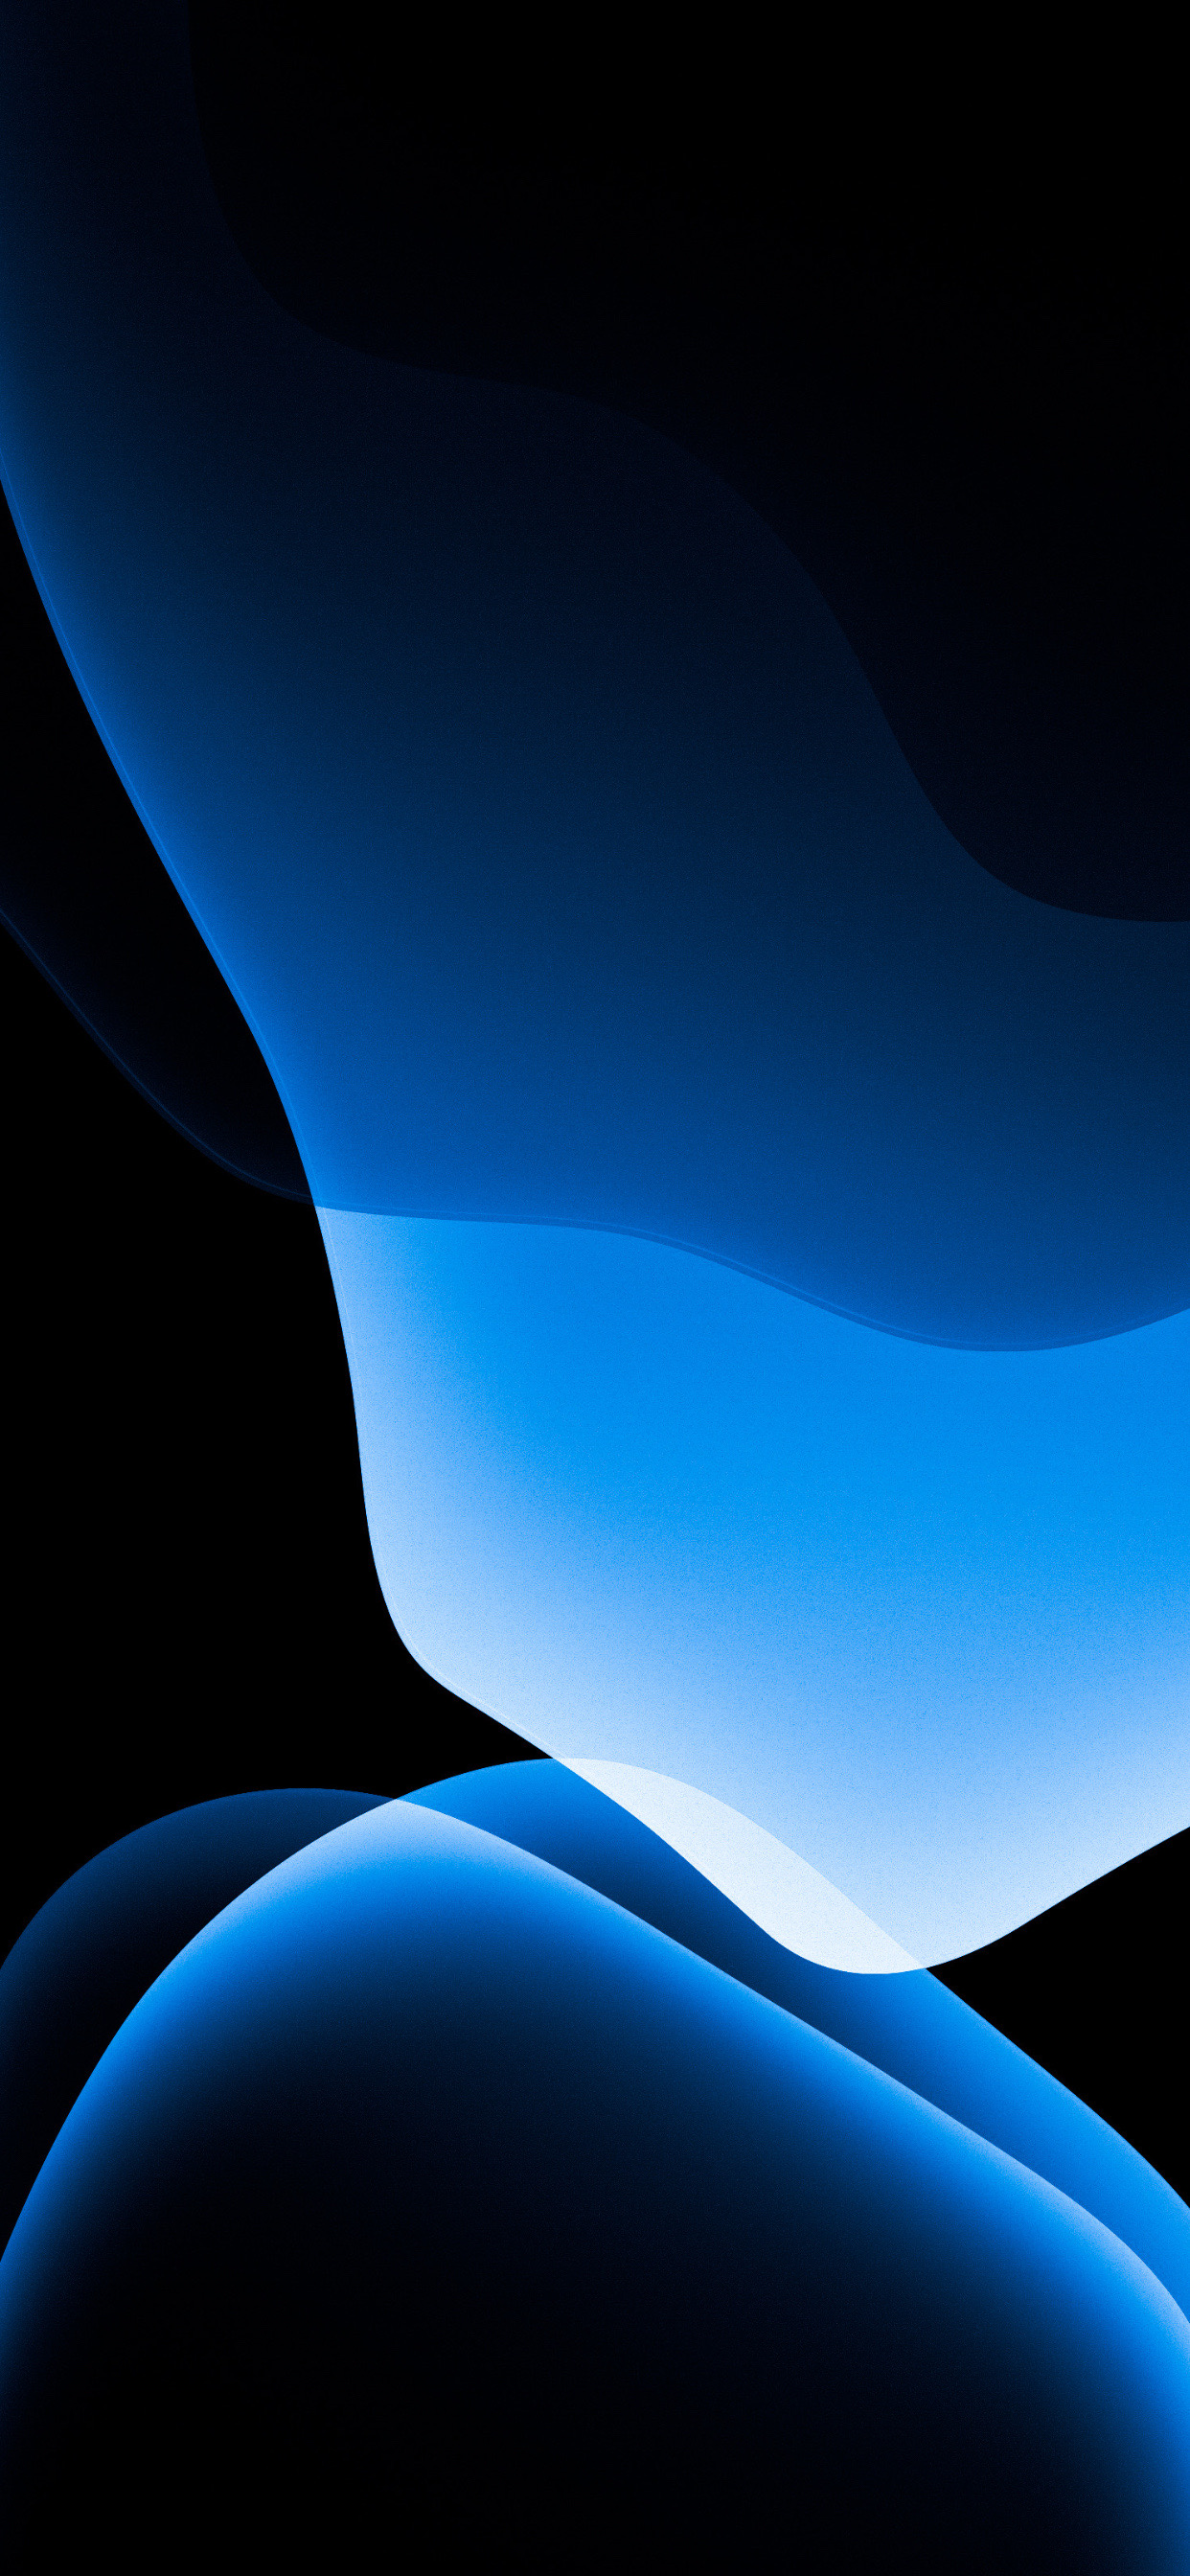 Hình nền blue iOS 13 sẽ mang đến một trải nghiệm tuyệt vời cho người dùng iPhone của bạn. Với sắc màu xanh dương tươi sáng, hình nền này không chỉ giúp điện thoại của bạn trở nên độc đáo mà còn khiến bạn cảm thấy thư thái và sảng khoái.